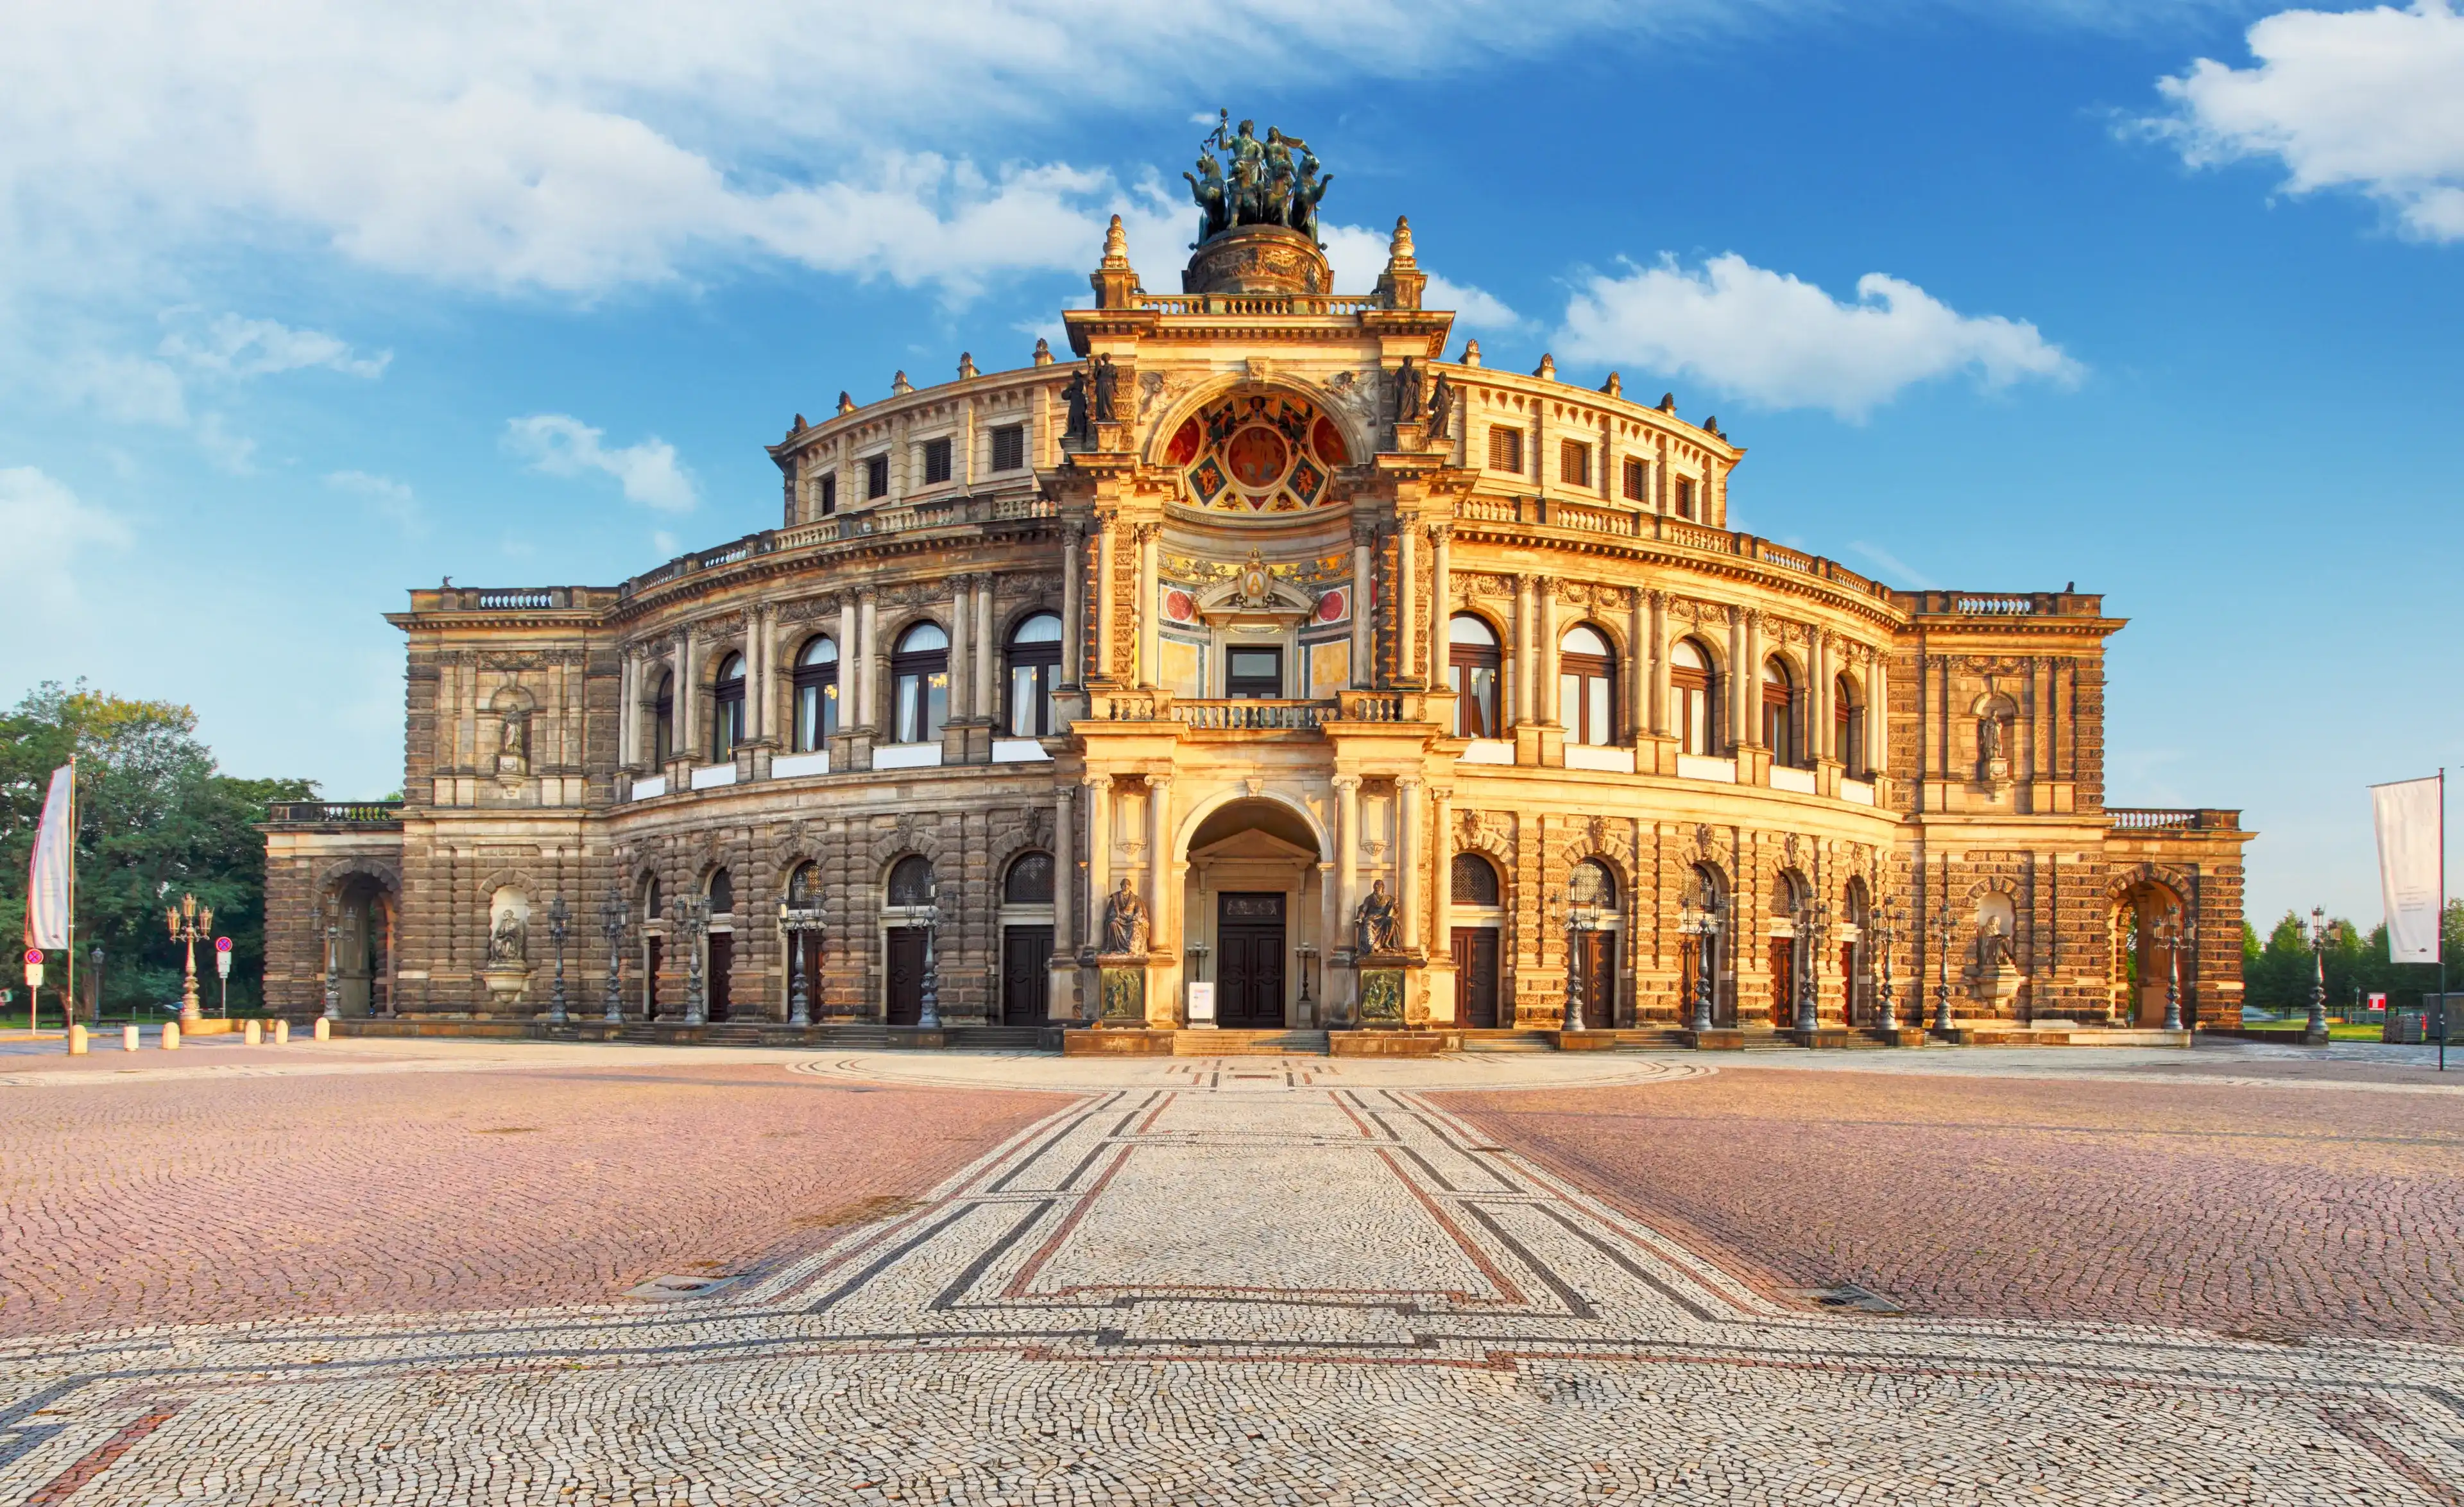 Best Dresden hotels. Cheap hotels in Dresden, Germany